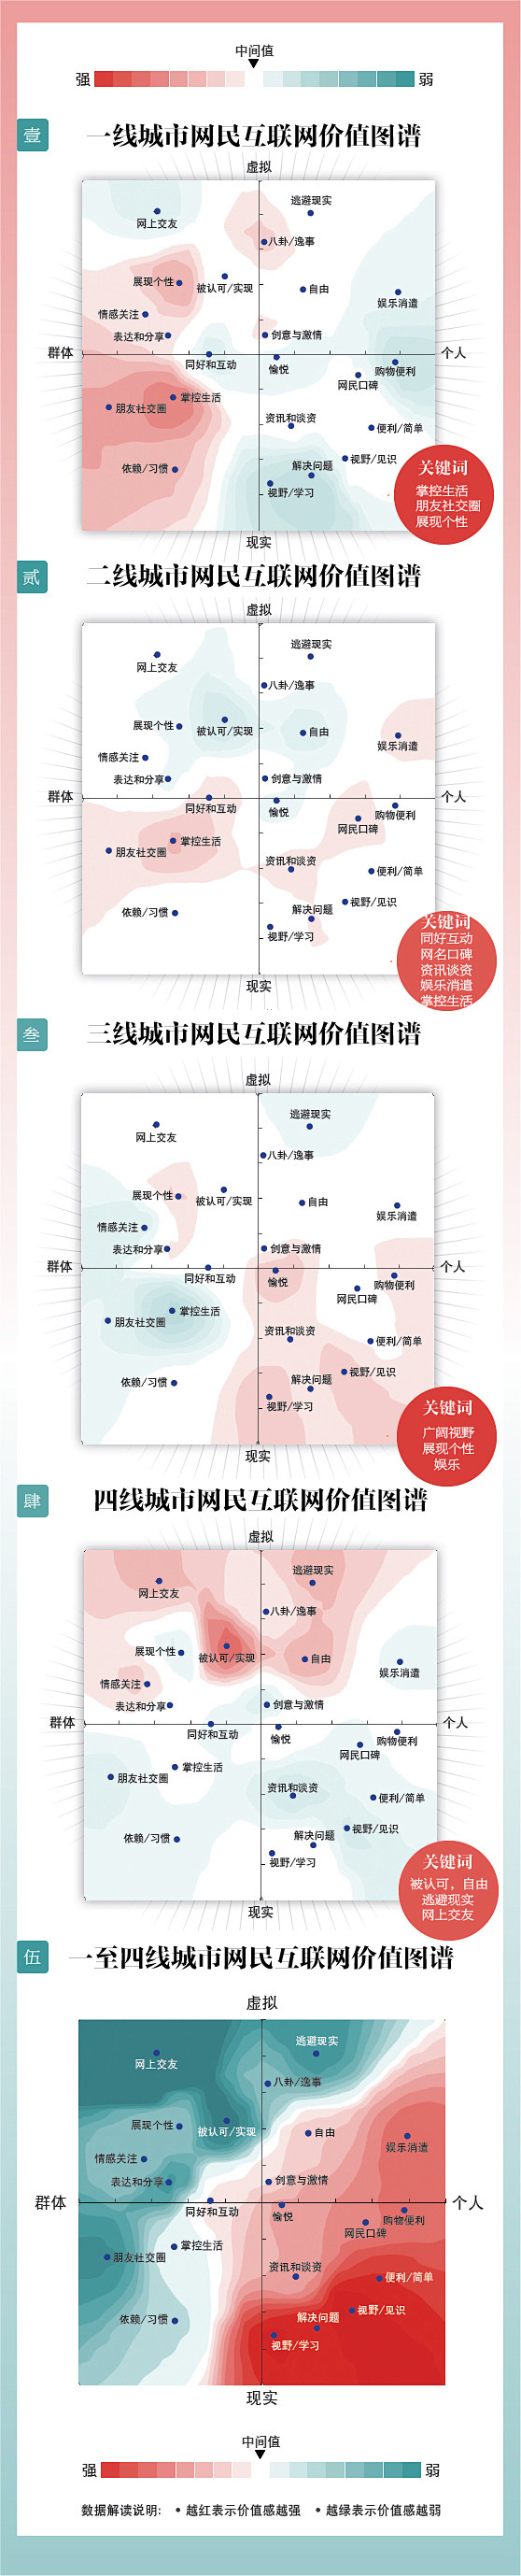 中国1－4线城市互联网价值分布【信息图】